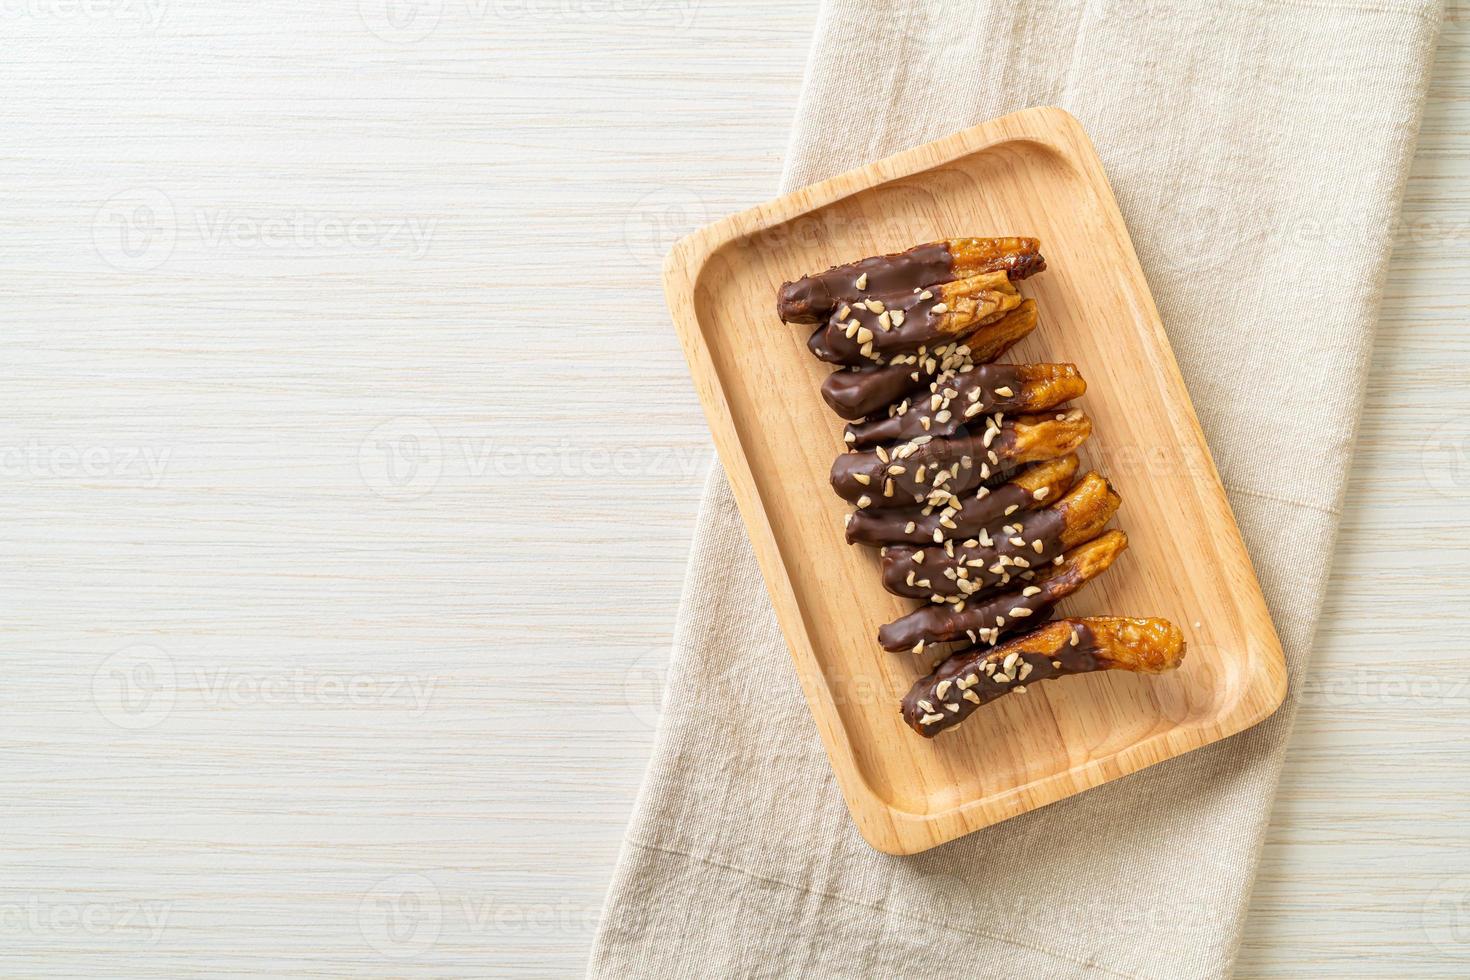 cobertura de banana de chocolate ou chocolate mergulhado em banana foto